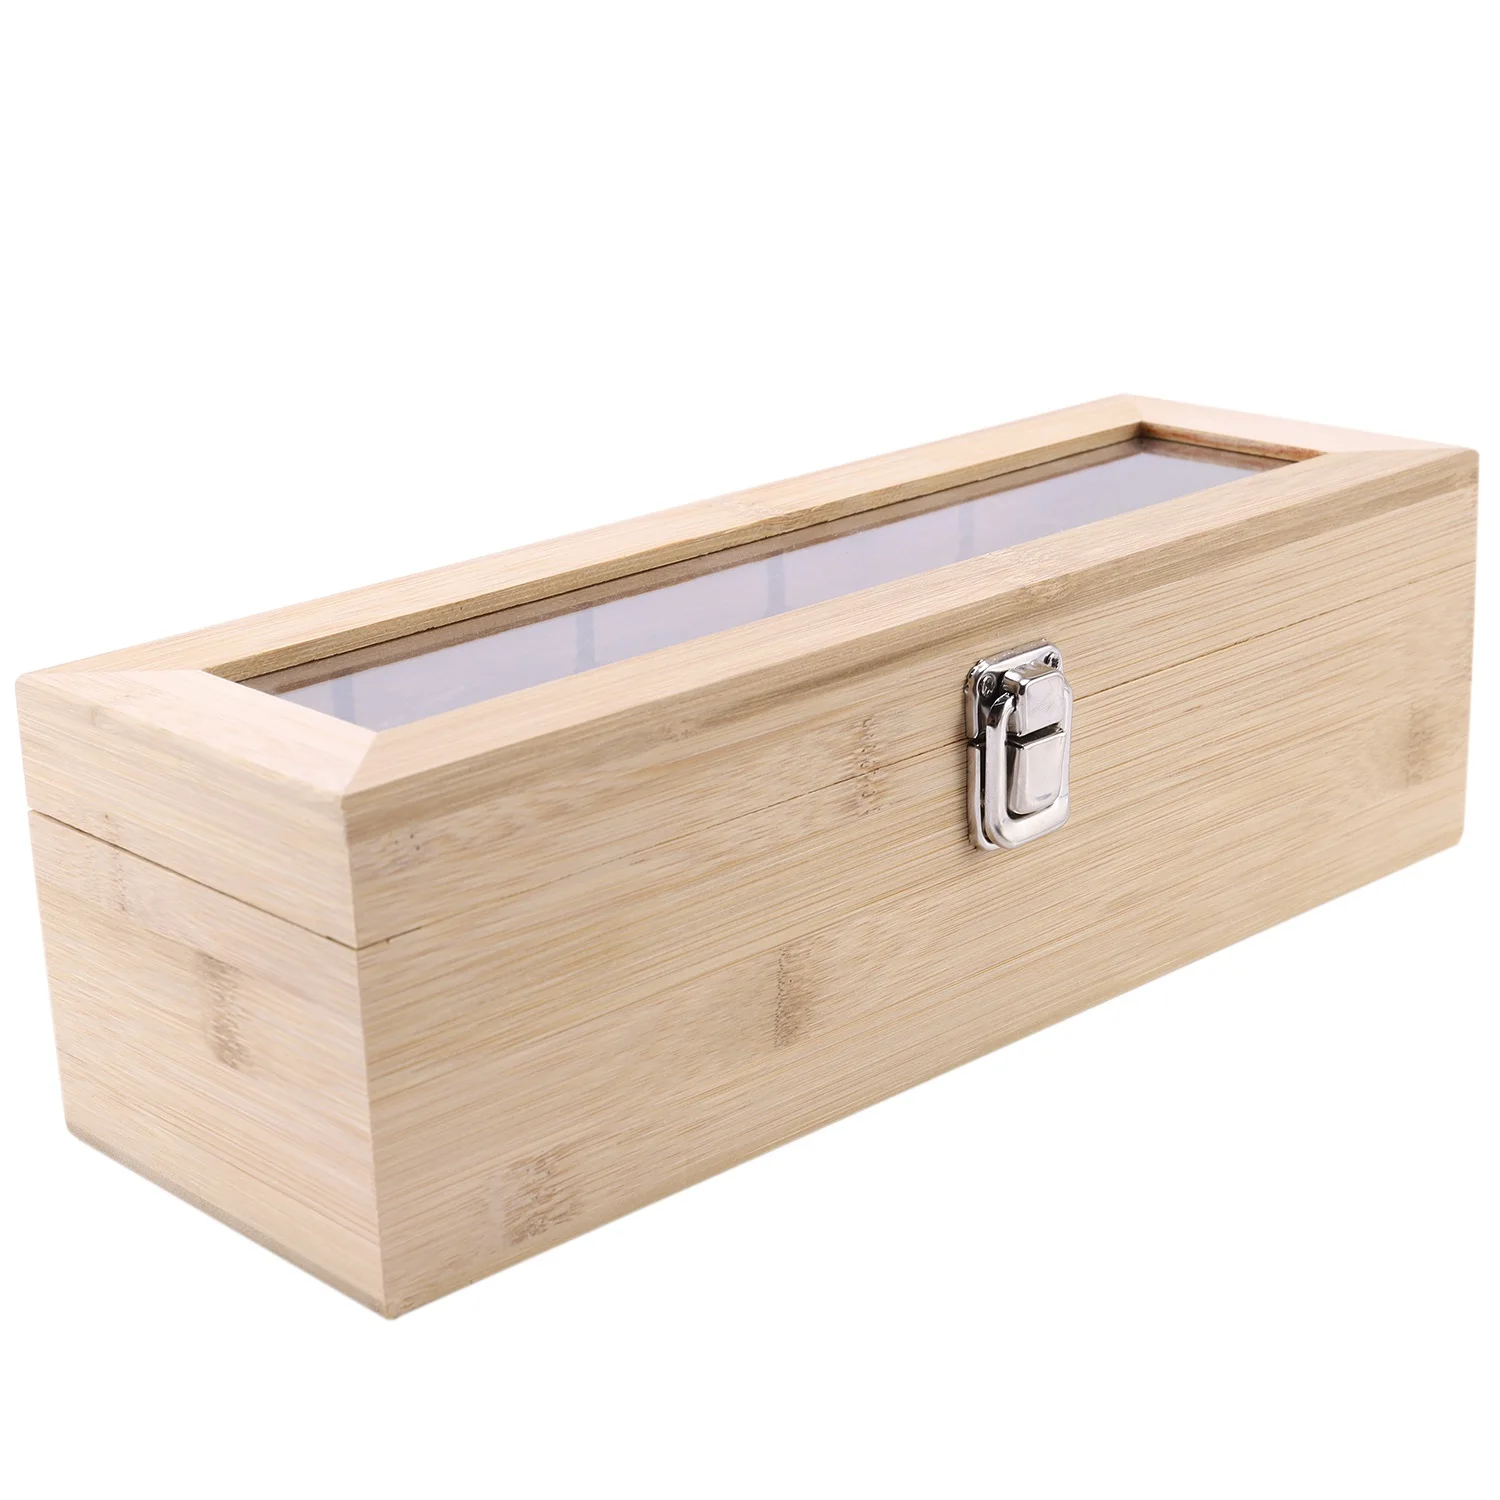 Органайзер для чайных пакетиков Bamboo System Коробка для хранения ювелирных изделий с 5 отделениями Органайзер для чайных коробок Деревянный контейнер для пакетиков сахара Изображение 4